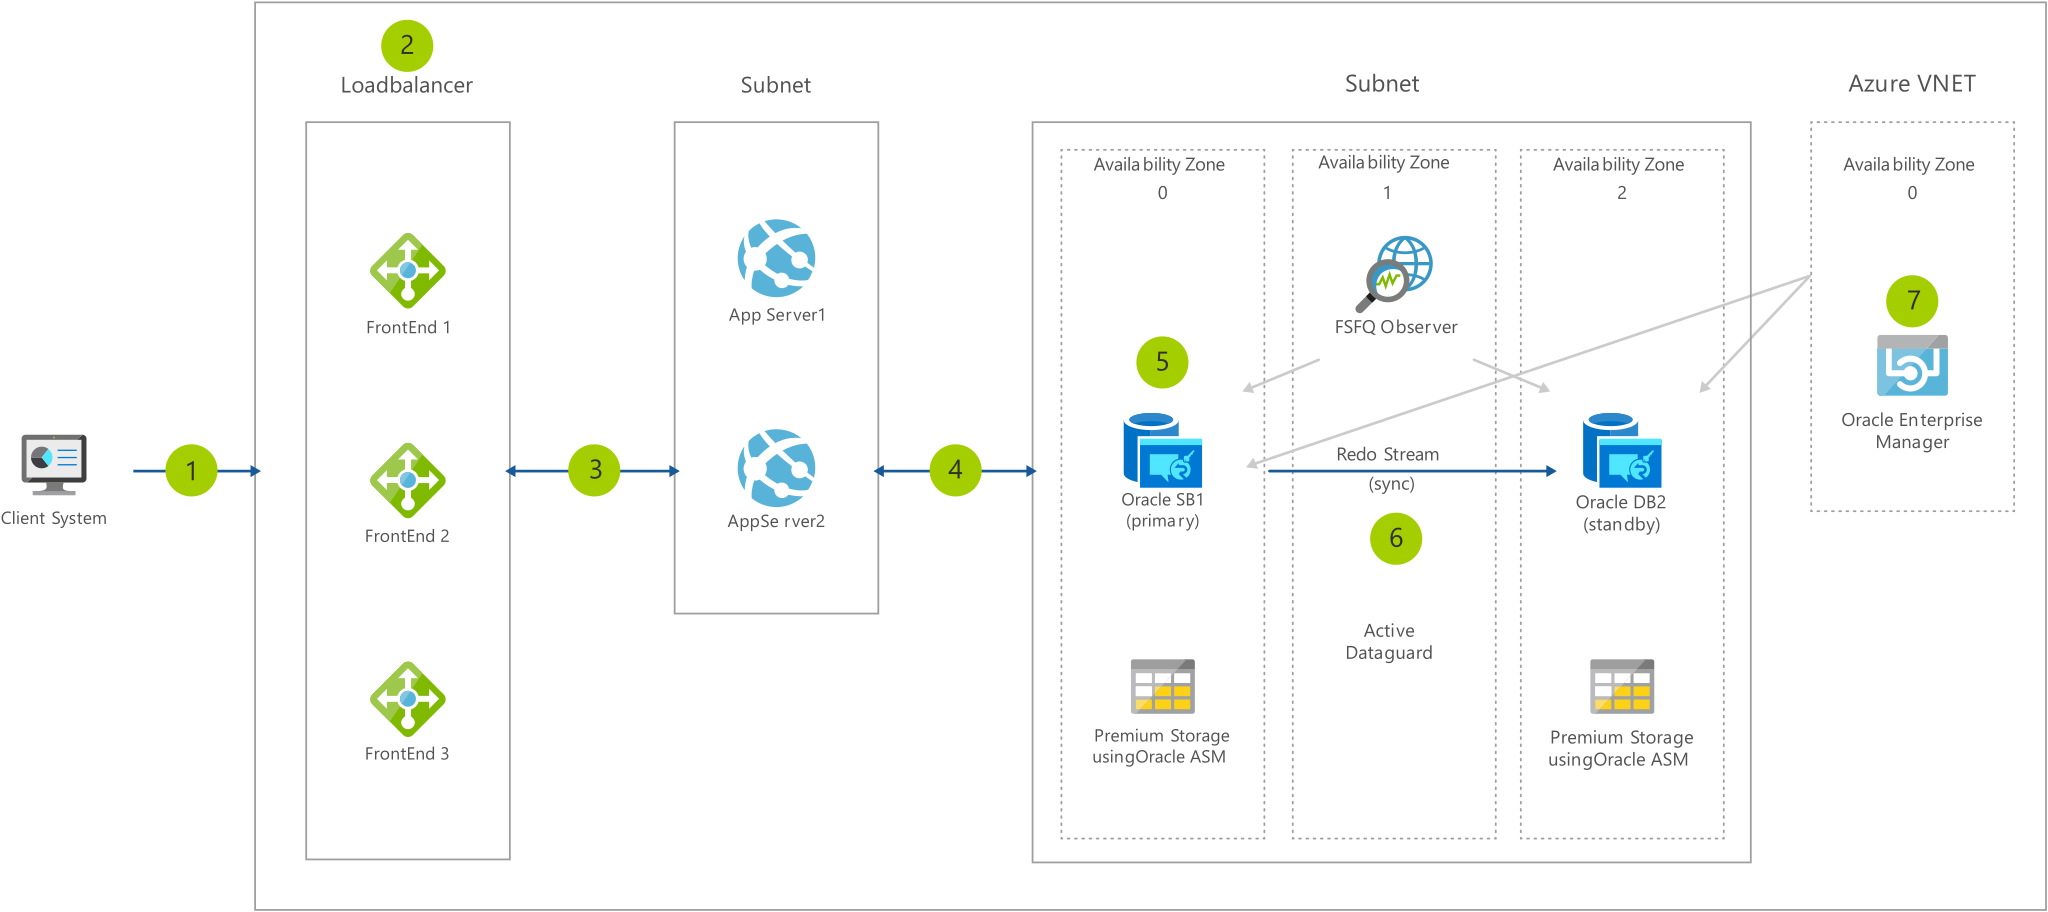 Diagramma dell'architettura che mostra dal client tramite il servizio di bilanciamento del carico e le subnet in Azure V NET.